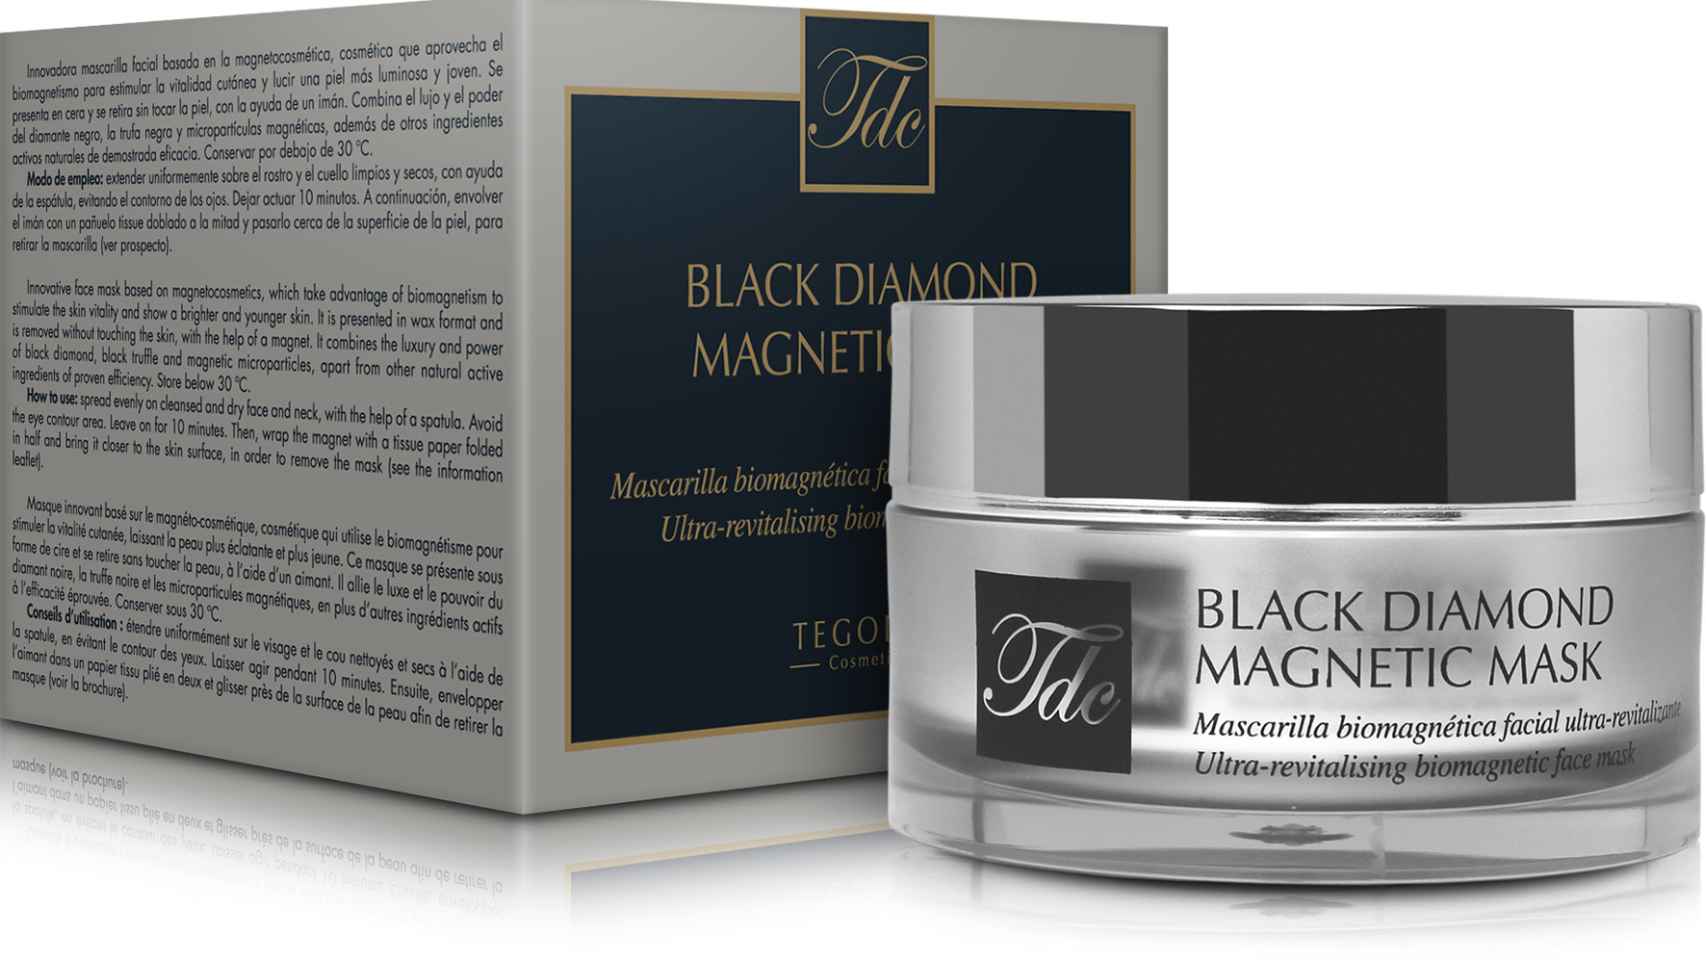 La mascarilla facial 'Black Diamond Magnetic Masck' tiene un precio de 63,50 euros.